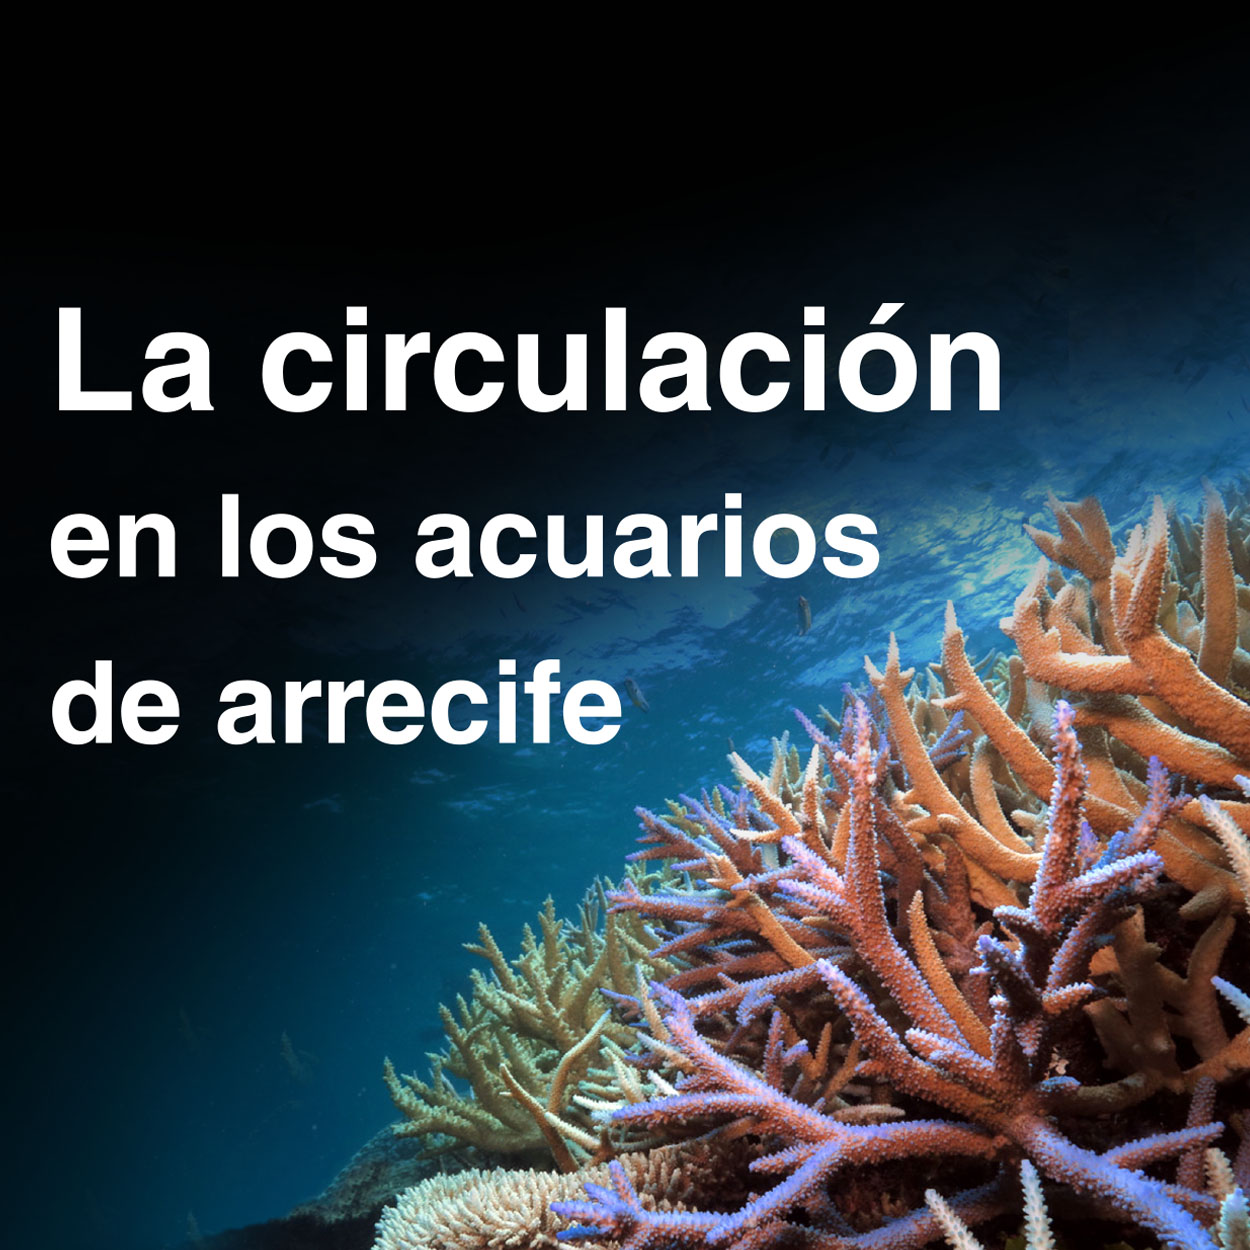 La circulación en los acuarios de arrecife